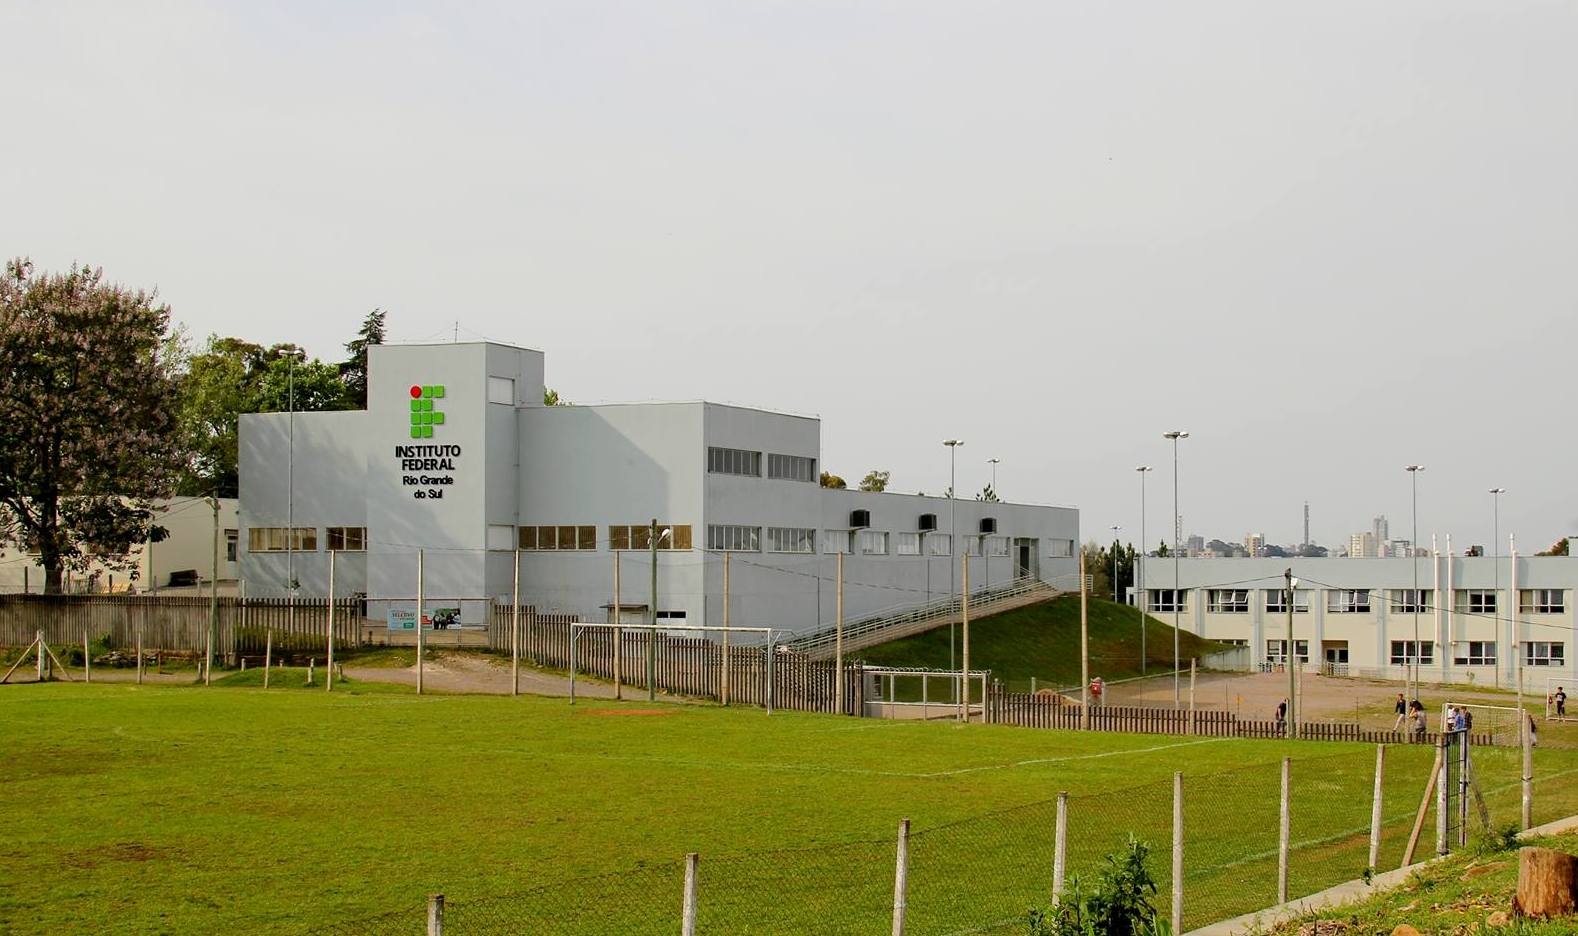 IFRS - Campus Rio Grande